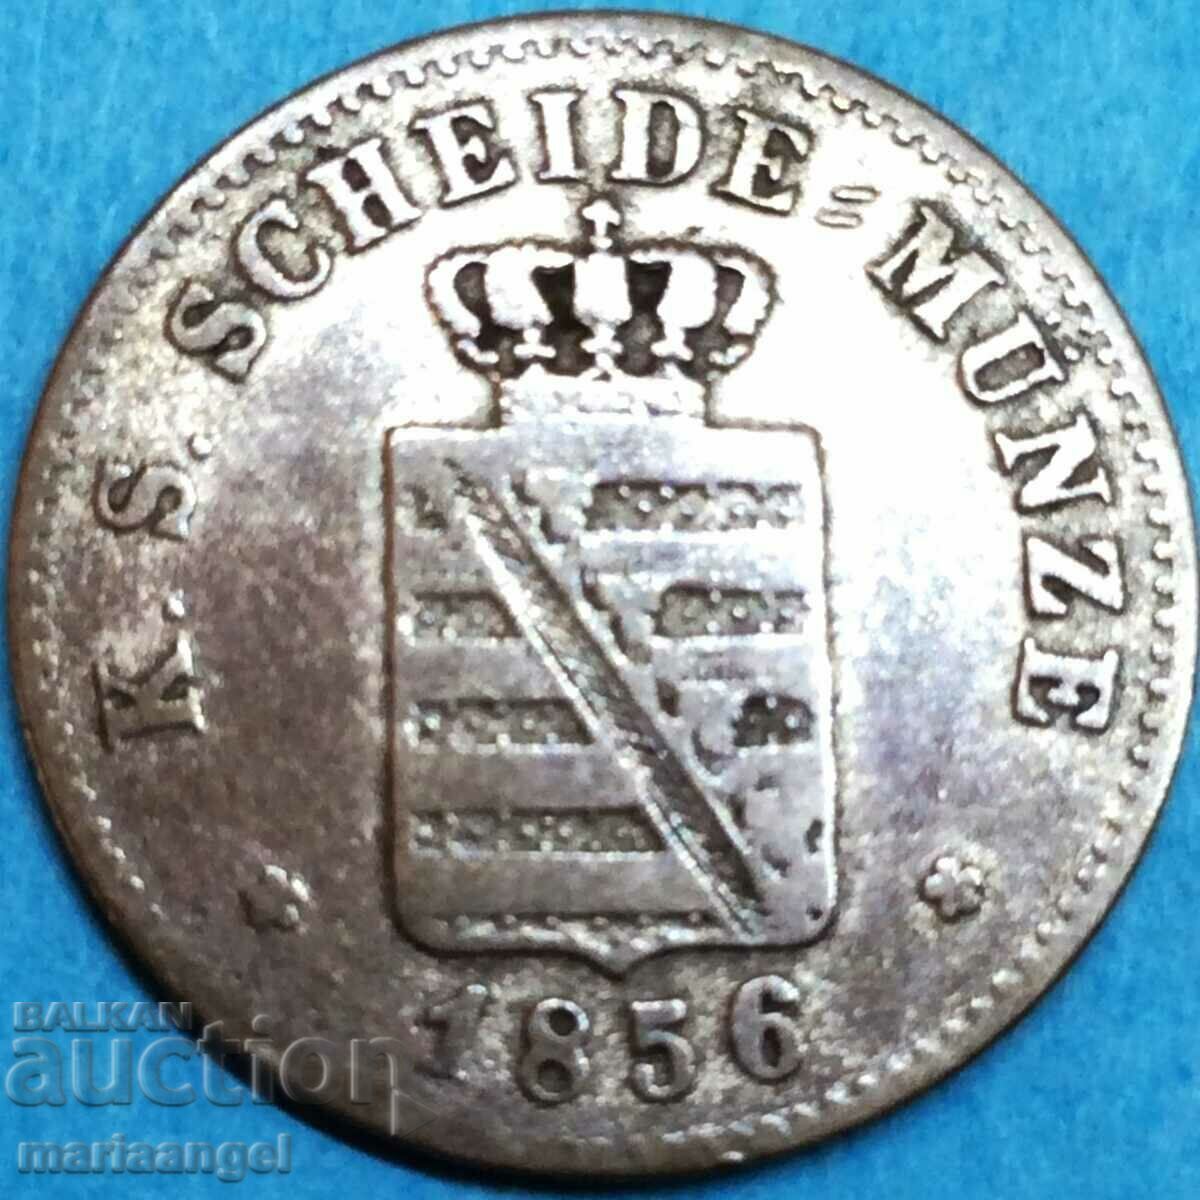 Саксония 2 нови гроша 20 пфенига 1856 Германия сребро